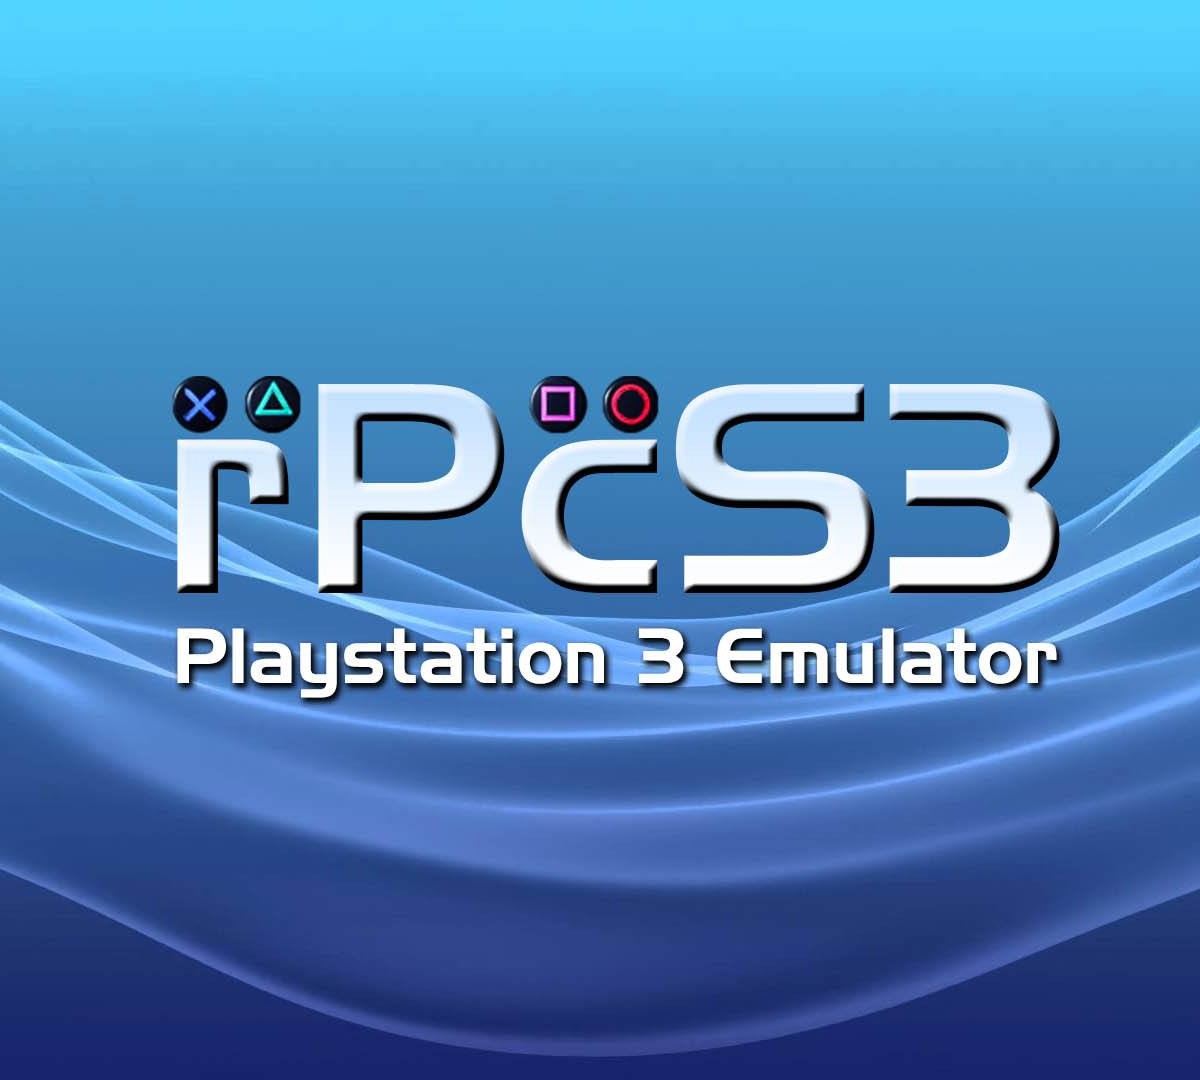 The Last of Us já está rodando em emulador de PS3 para PC